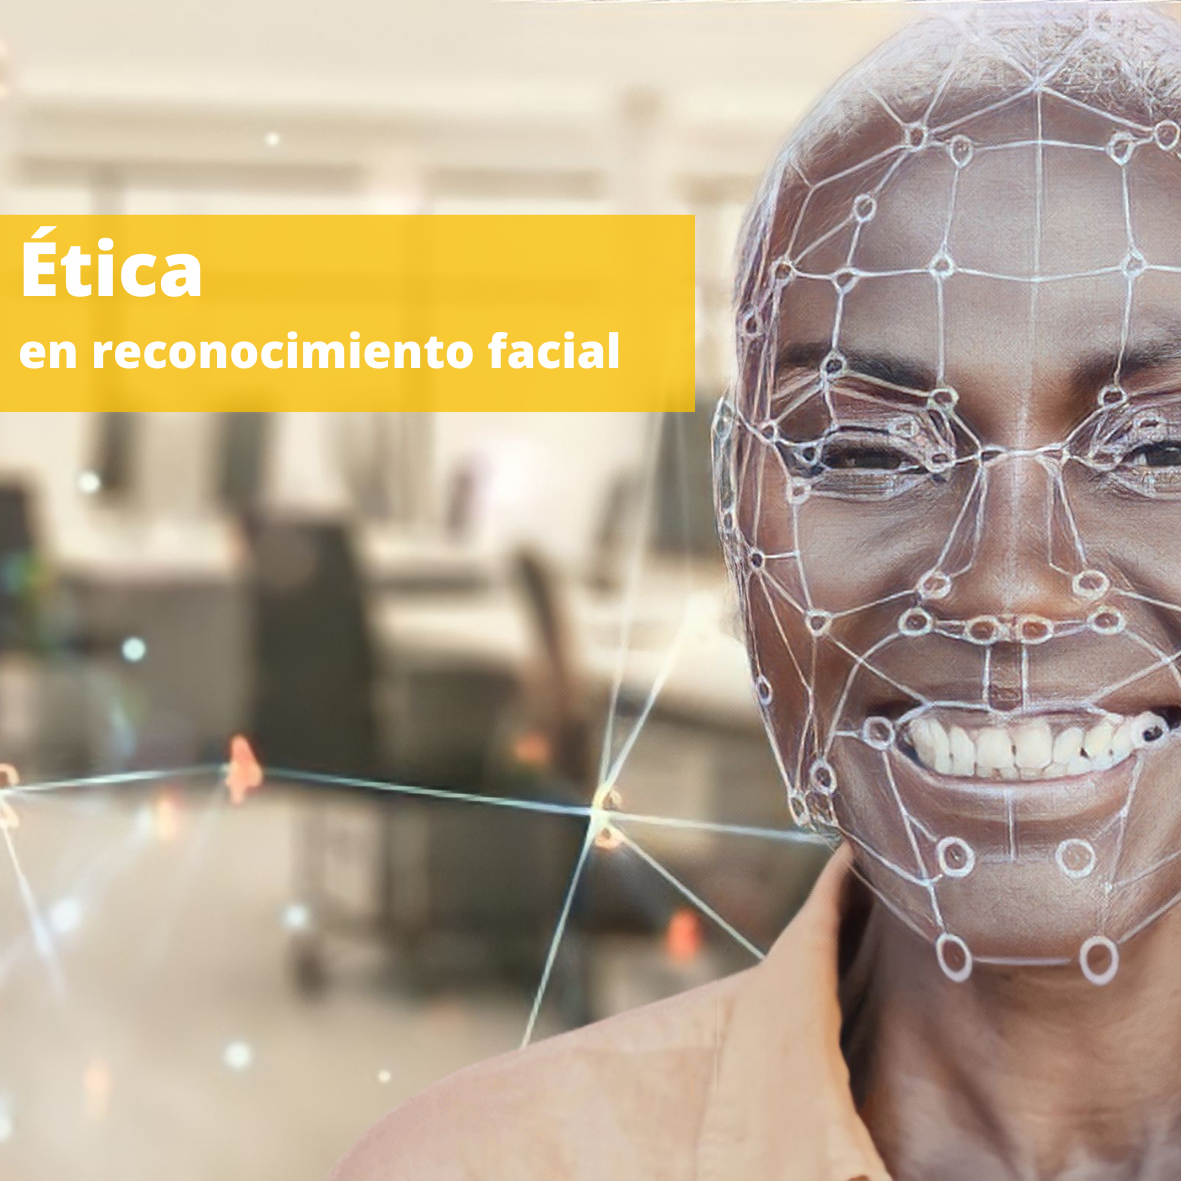 La ética en reconocimiento facial: El caso de Herta